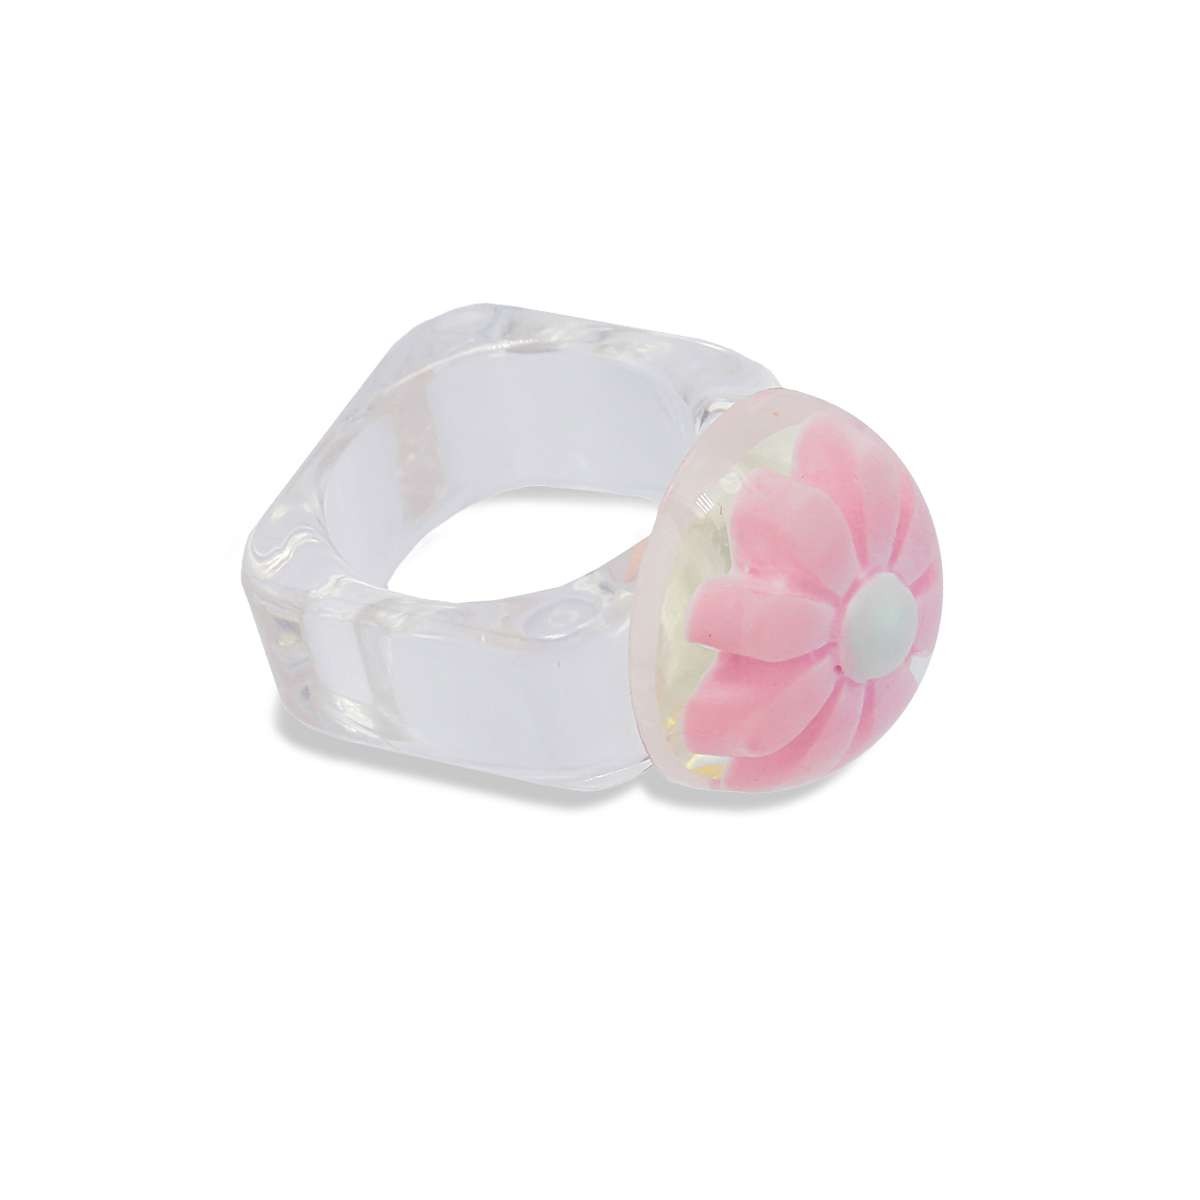 maxi anillo plastico transparente reciclado semiesfera flor margarita rosa